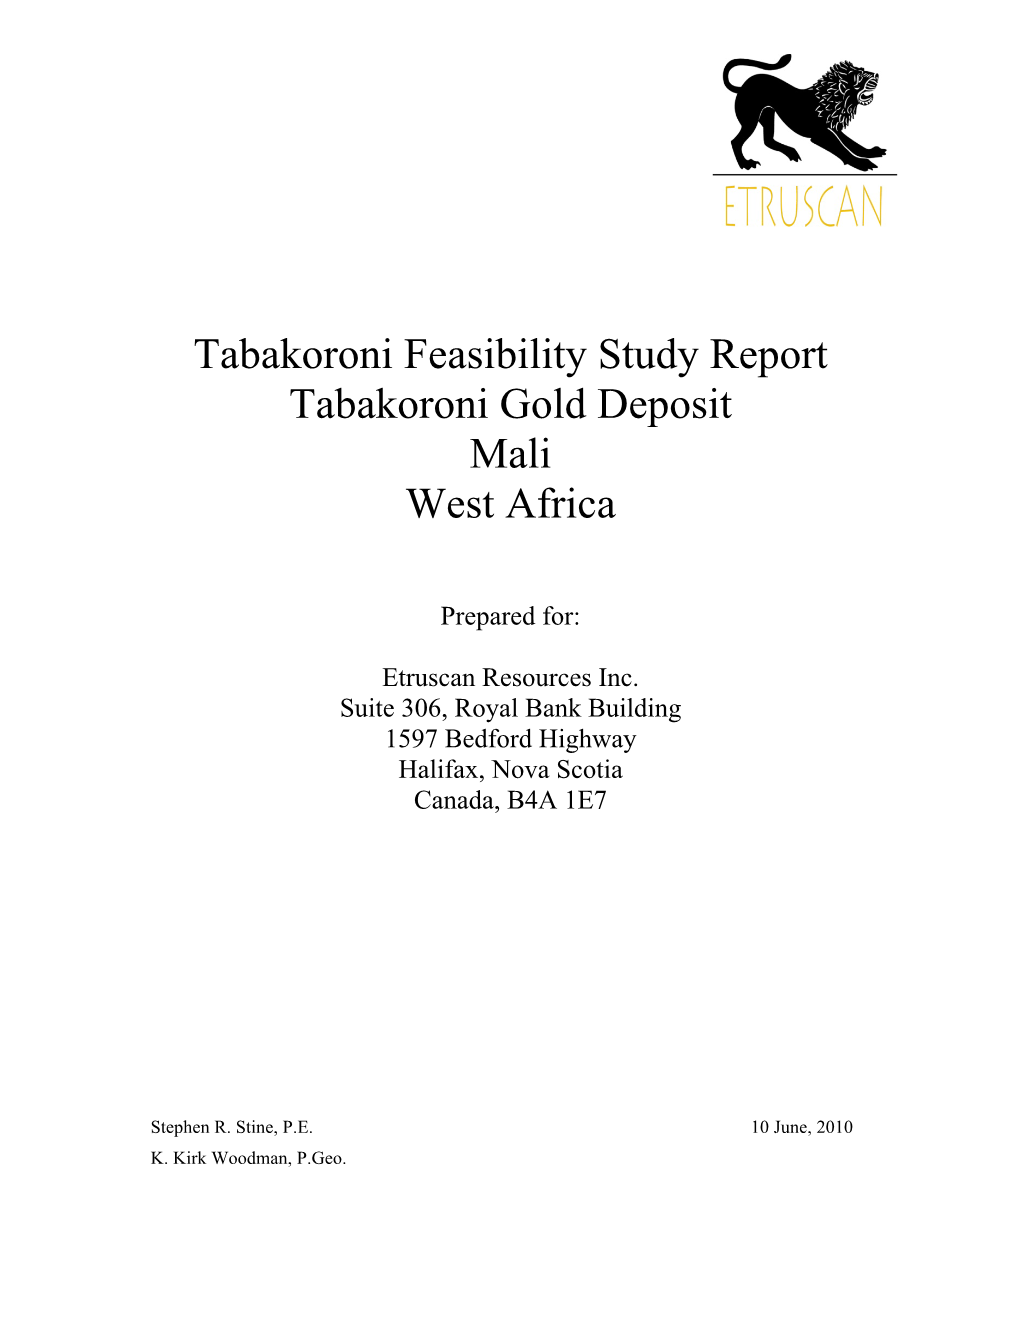 Tabakoroni Feasibility Study Report Tabakoroni Gold Deposit Mali West Africa